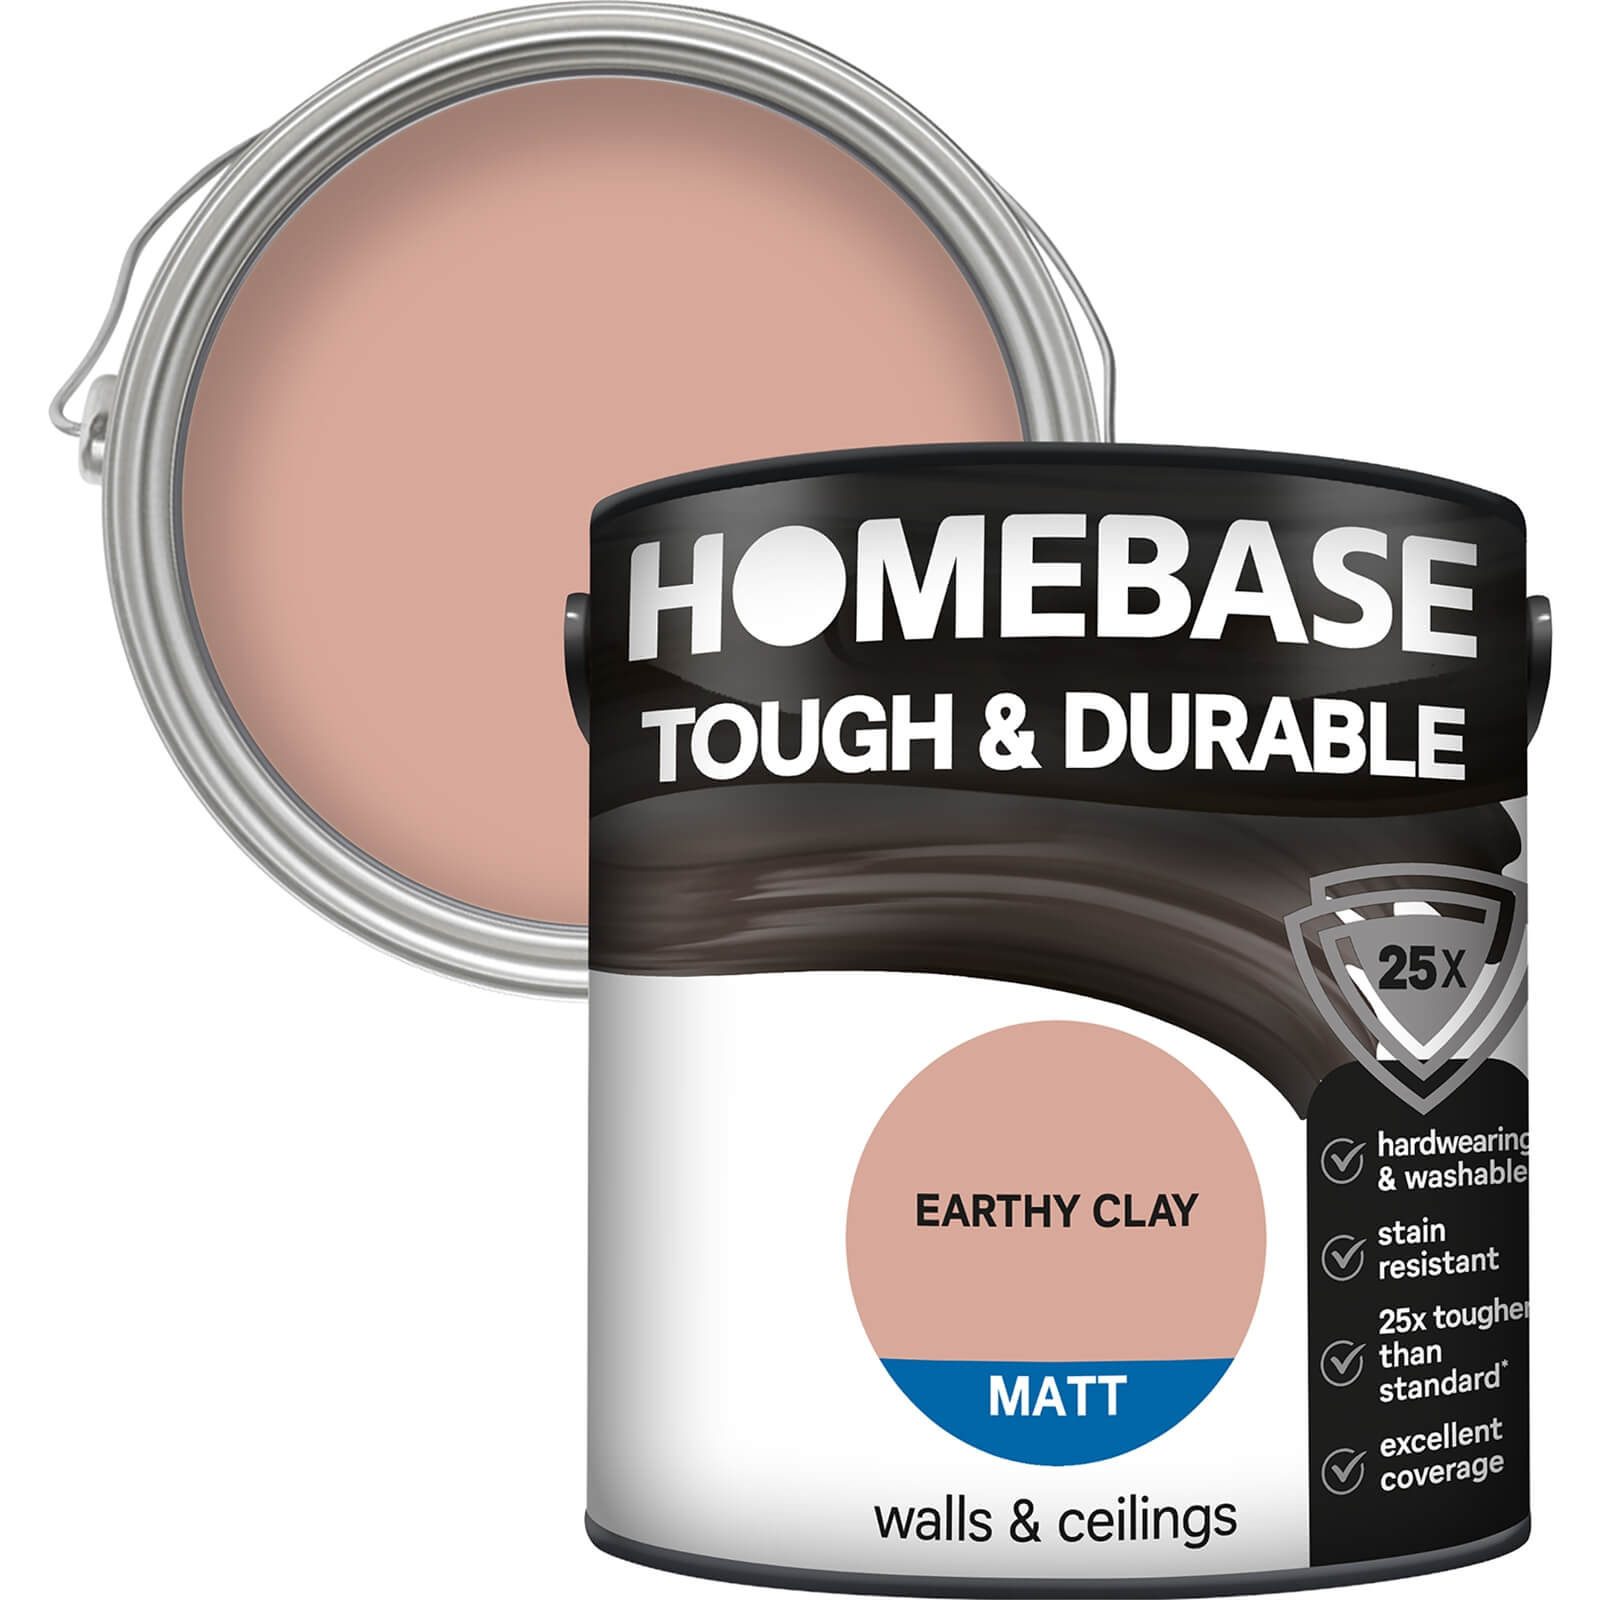 Homebase Tough & Durable Matt Paint Earth Clay - 2.5L